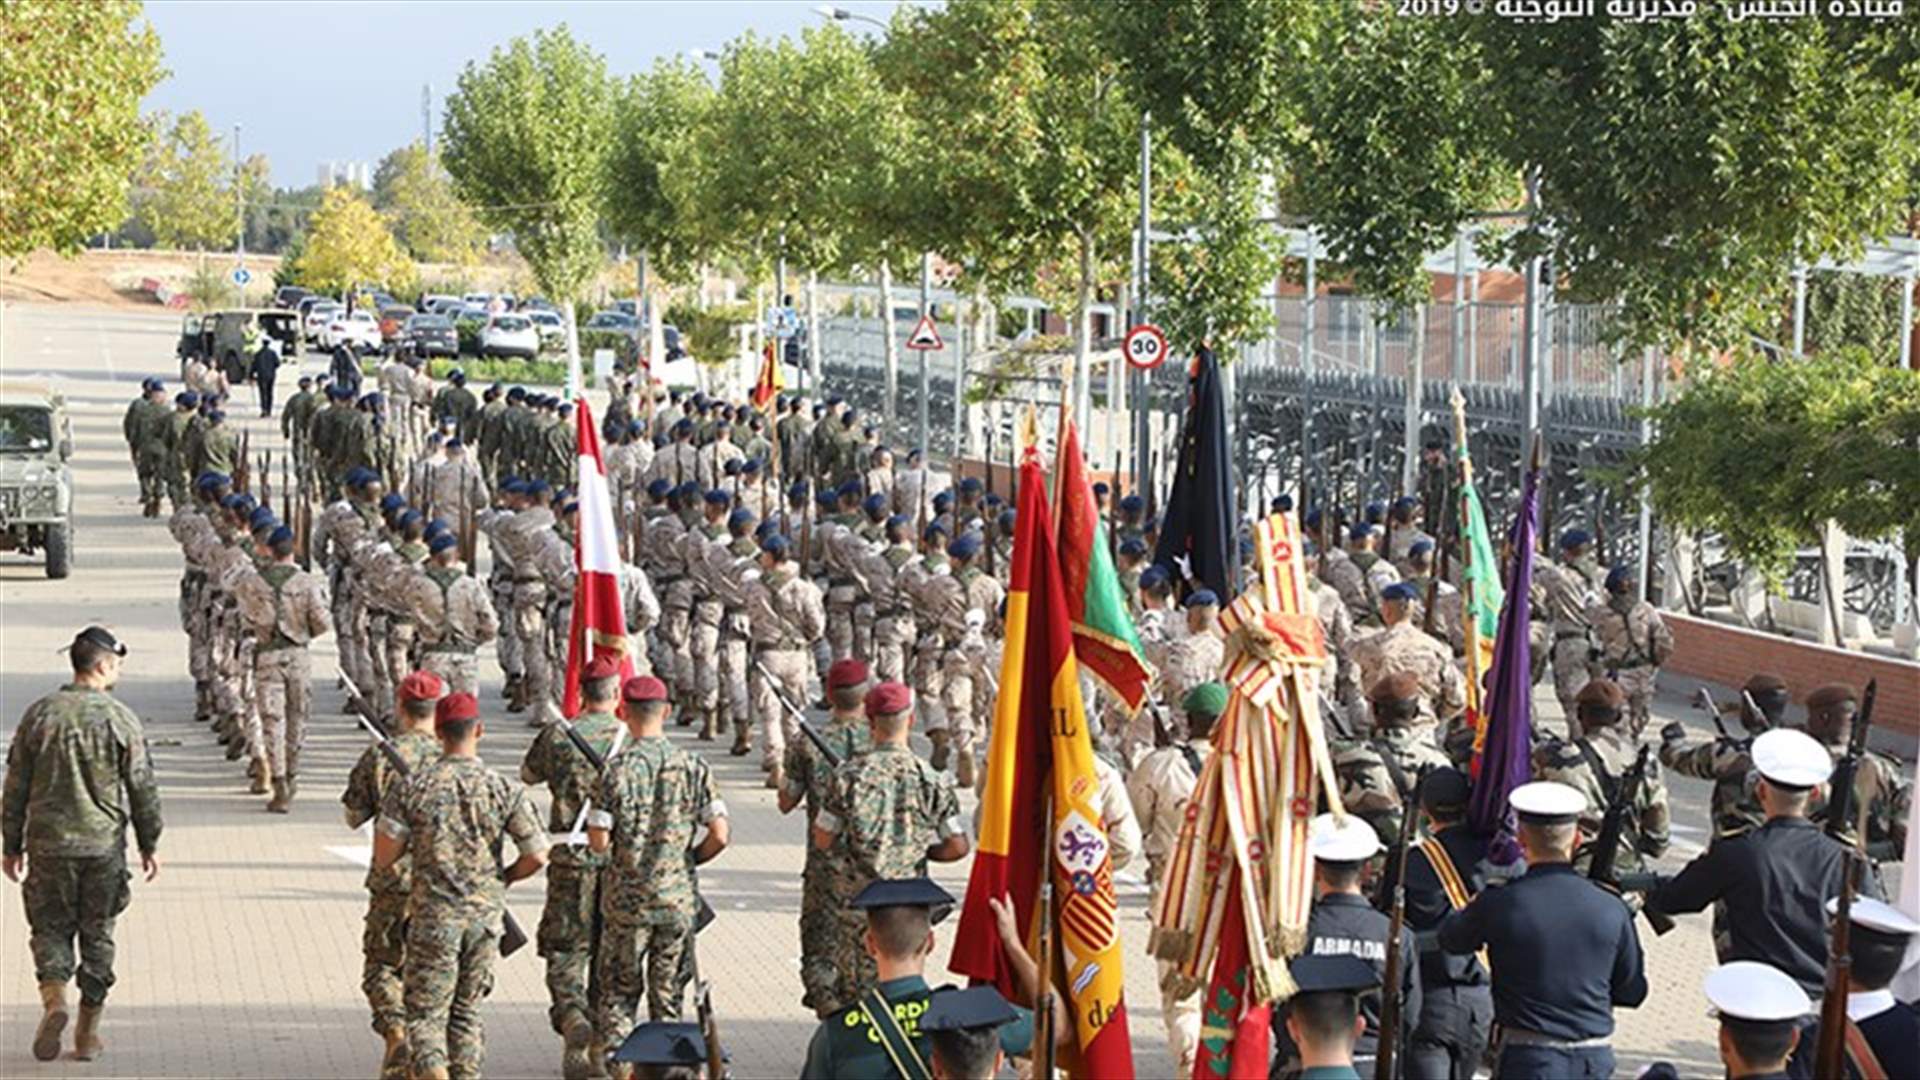 التدريبات العسكرية للجيش اللبناني في اسبانيا استعدادا للاحتفال بالعيد الوطني يوم غد...